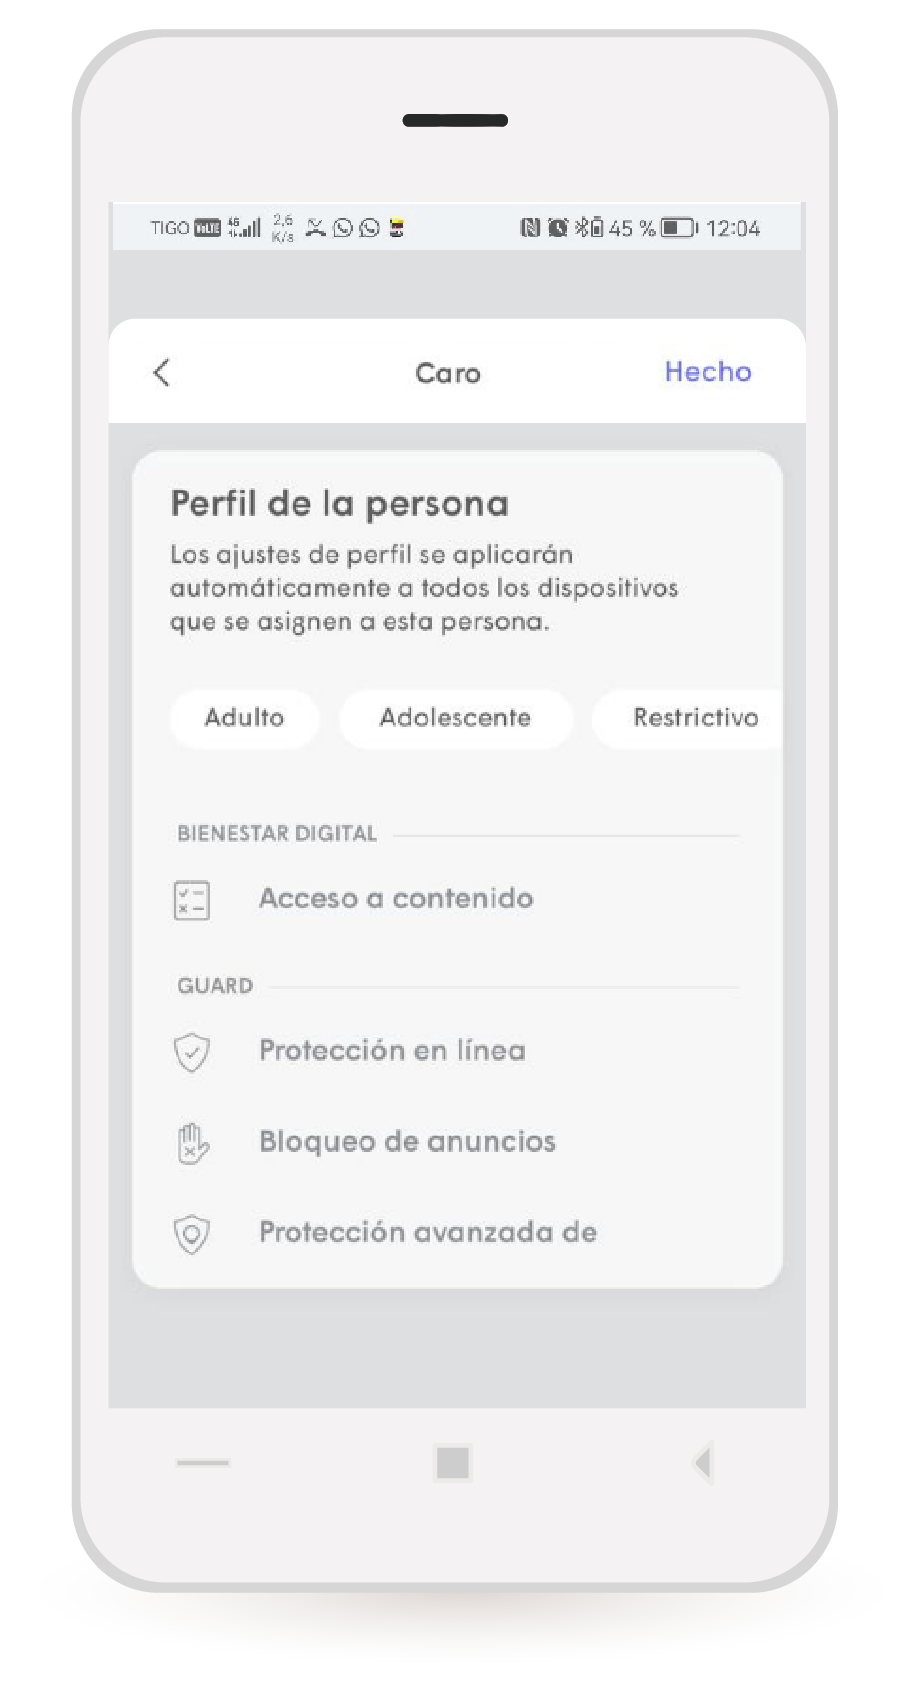 aw-tigo app wifi tipo de perfiles